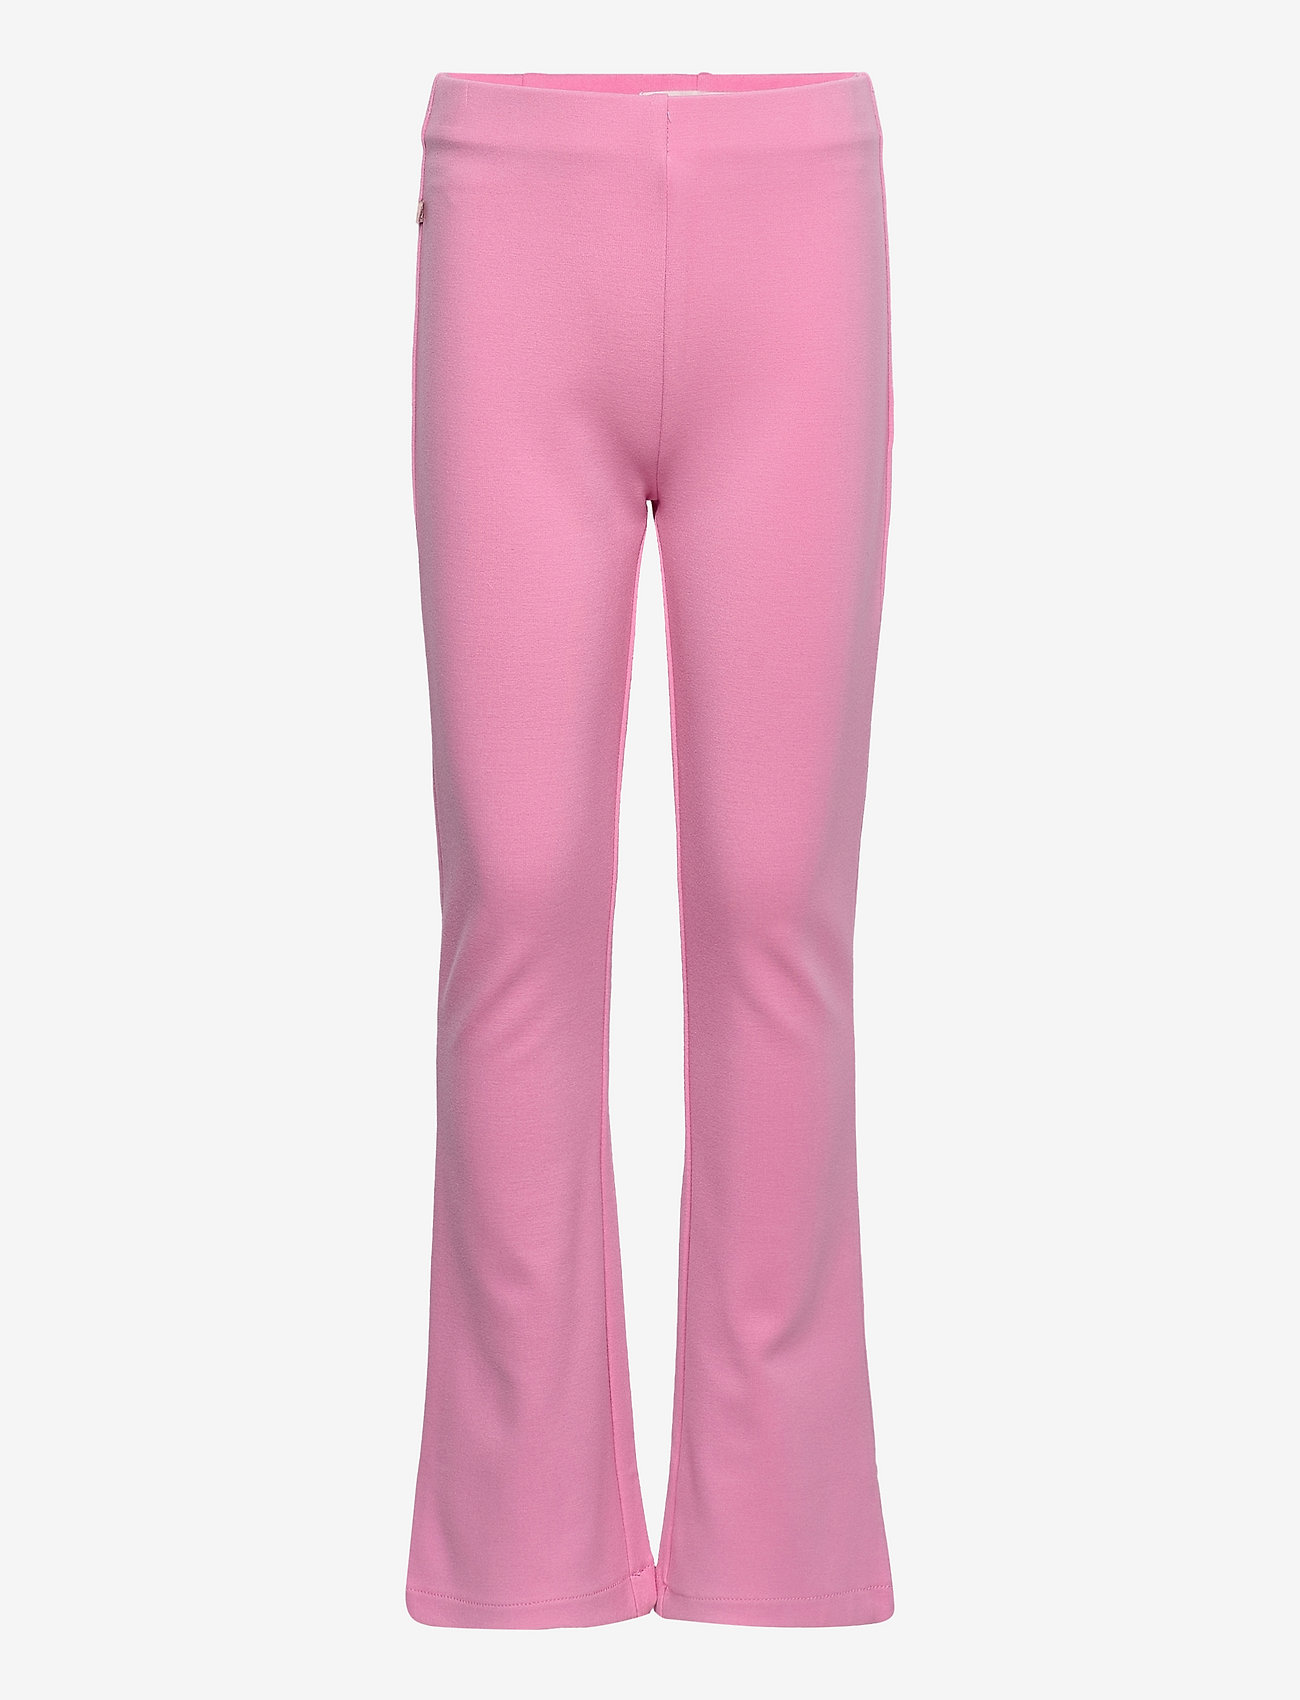 Rosemunde Kids - Trousers - madalaimad hinnad - bubblegum pink - 0